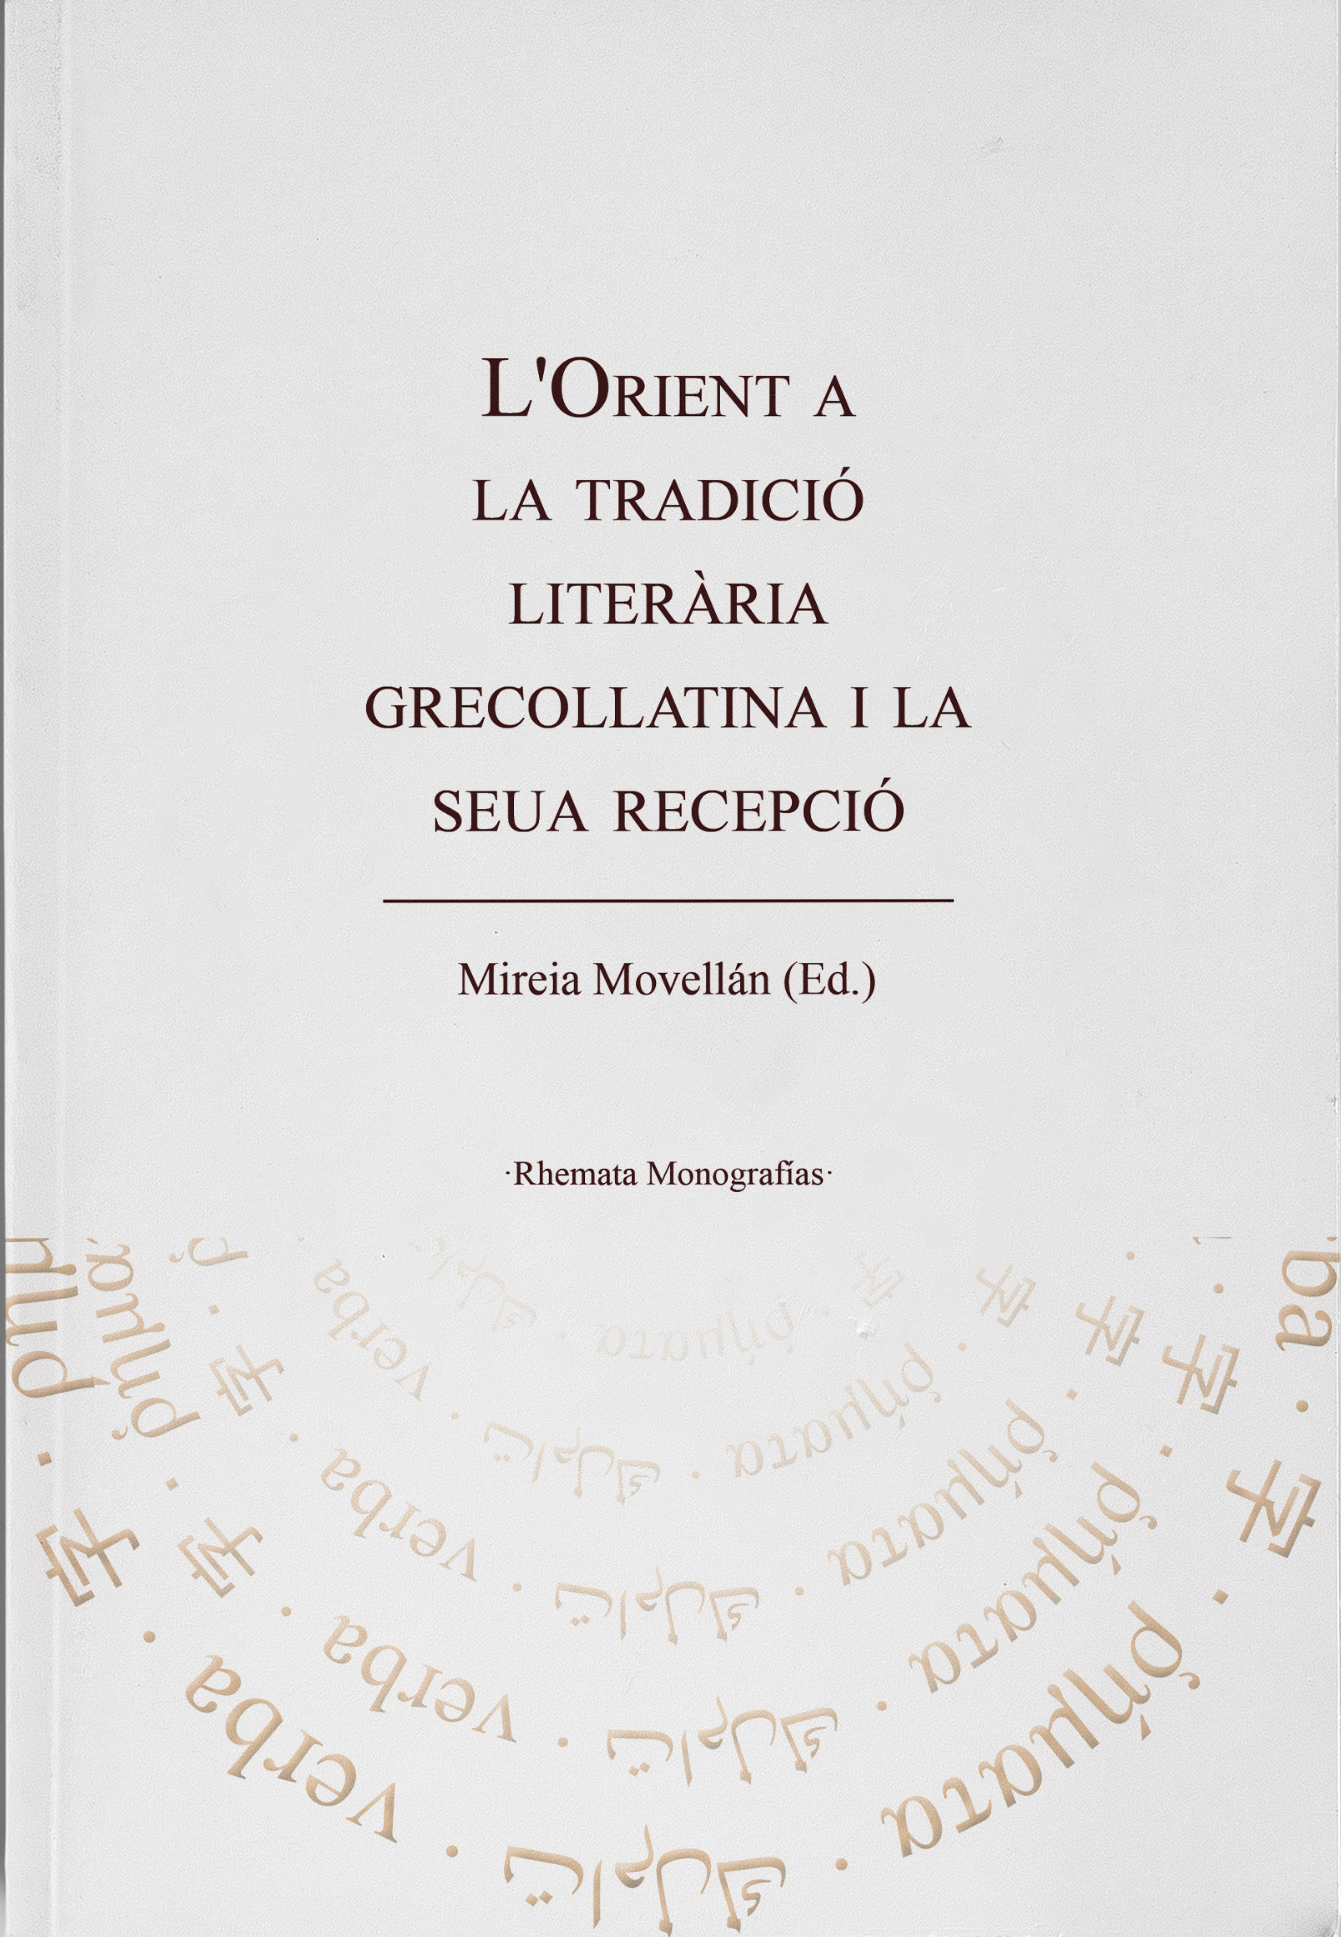 Imagen de portada del libro L’Orient a la tradició literària grecollatina i la seua recepció